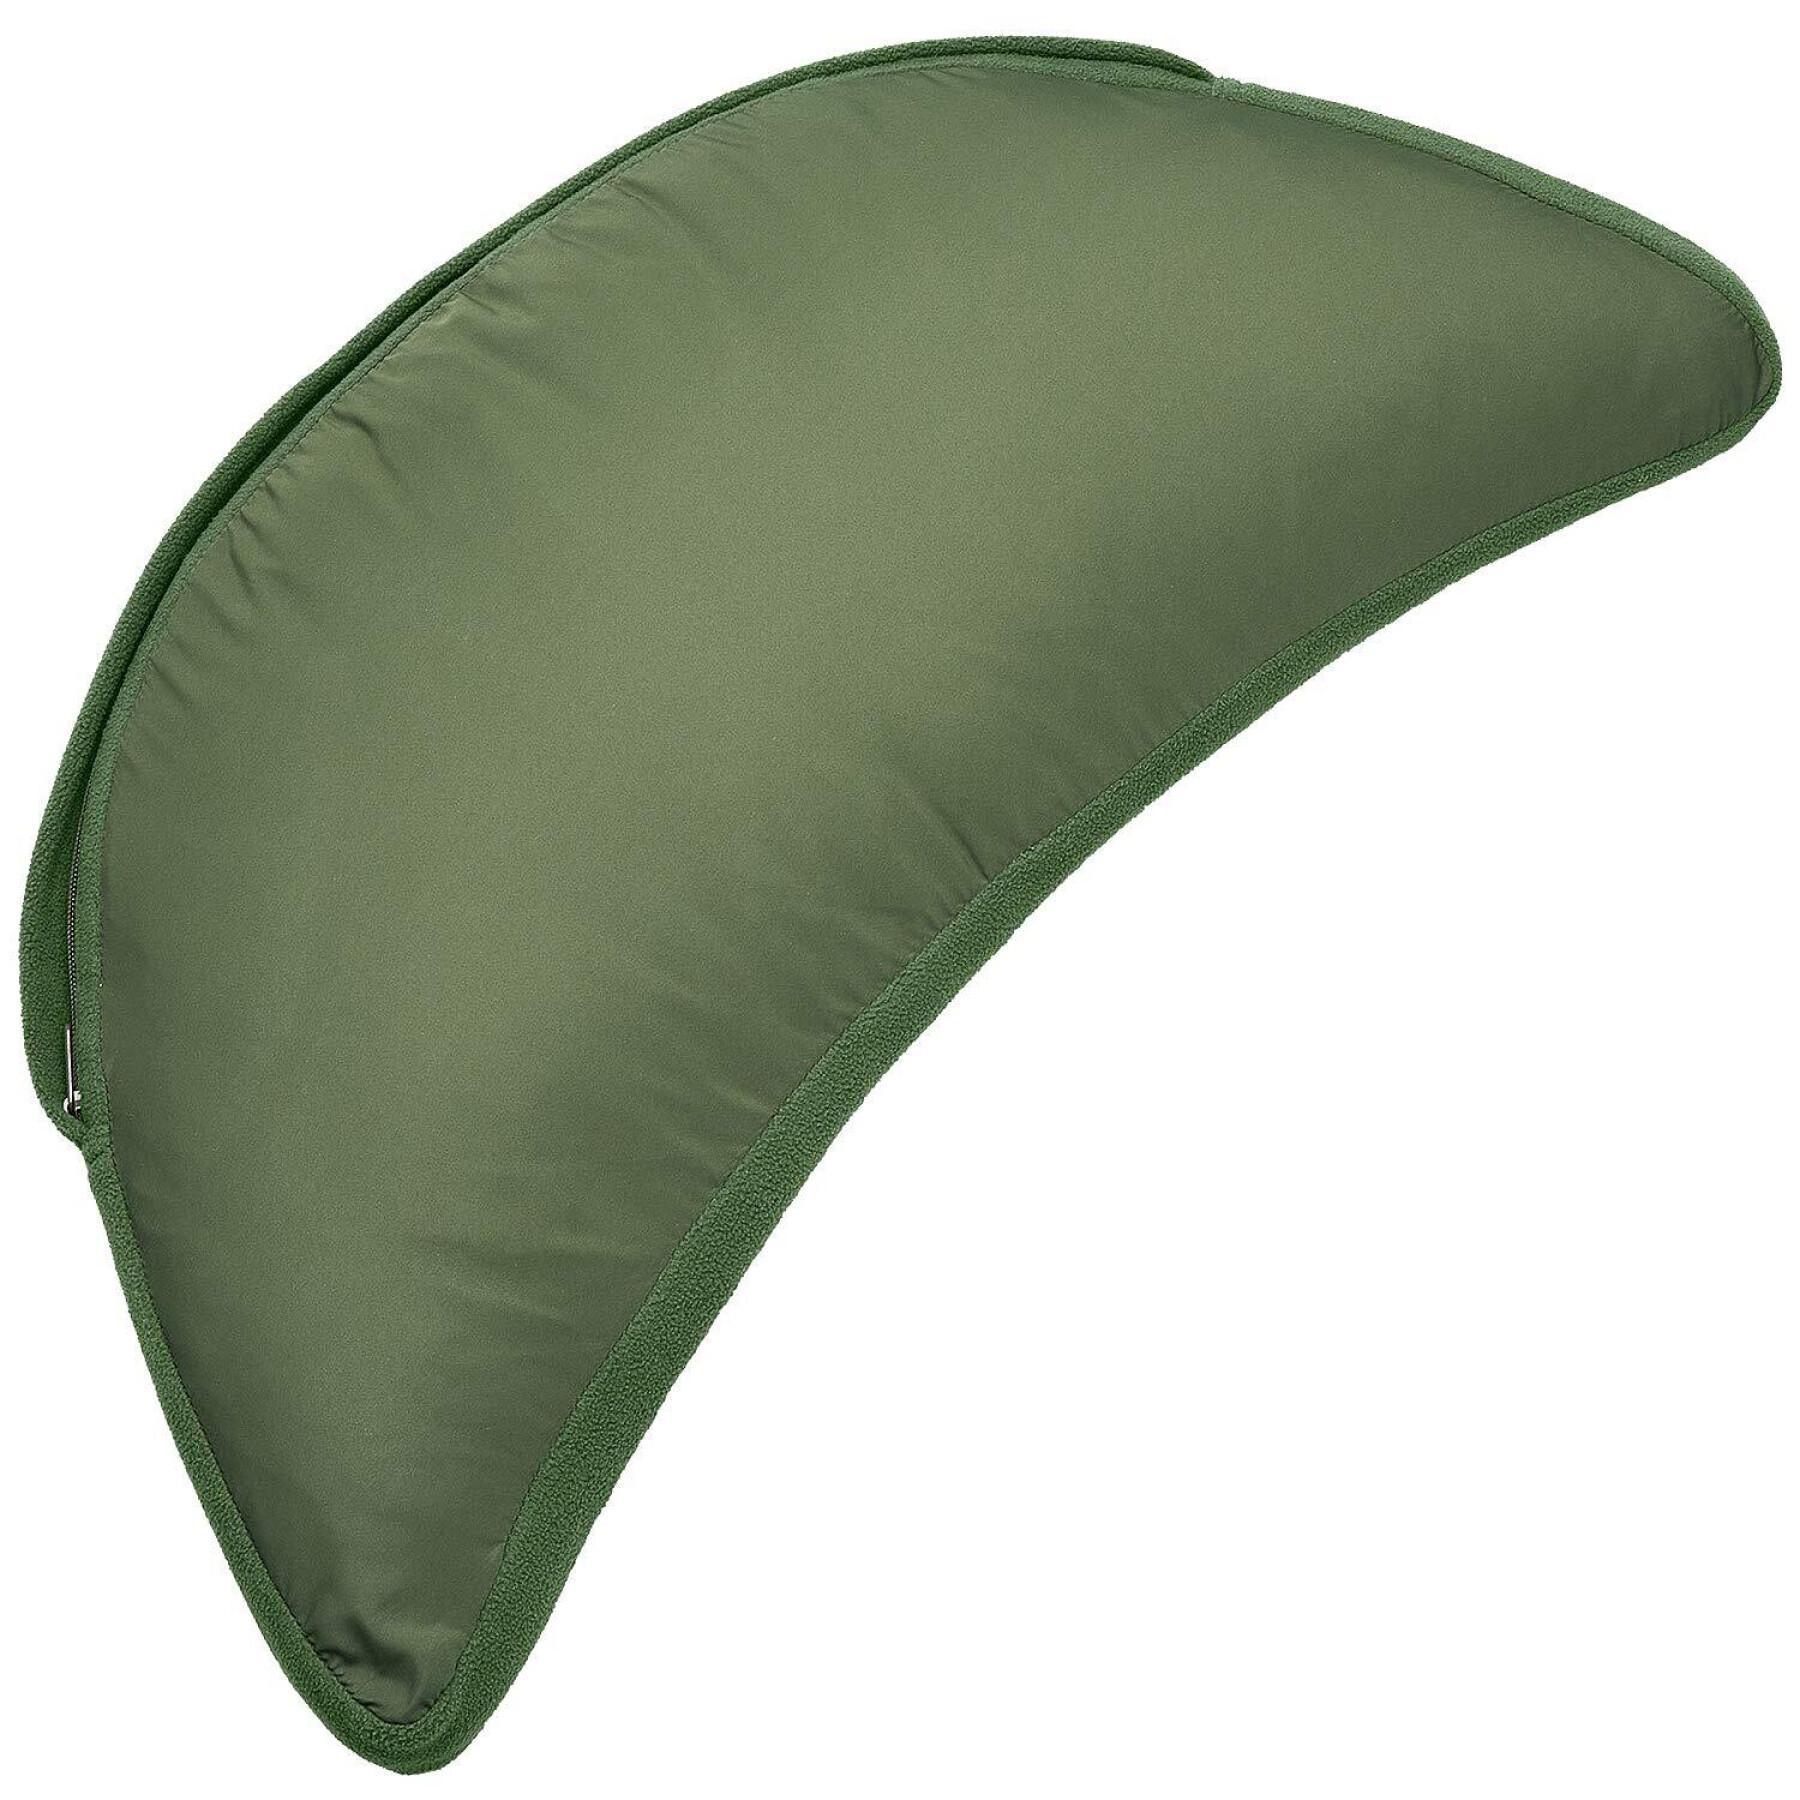 Cuscino Trakker Oval Pillow